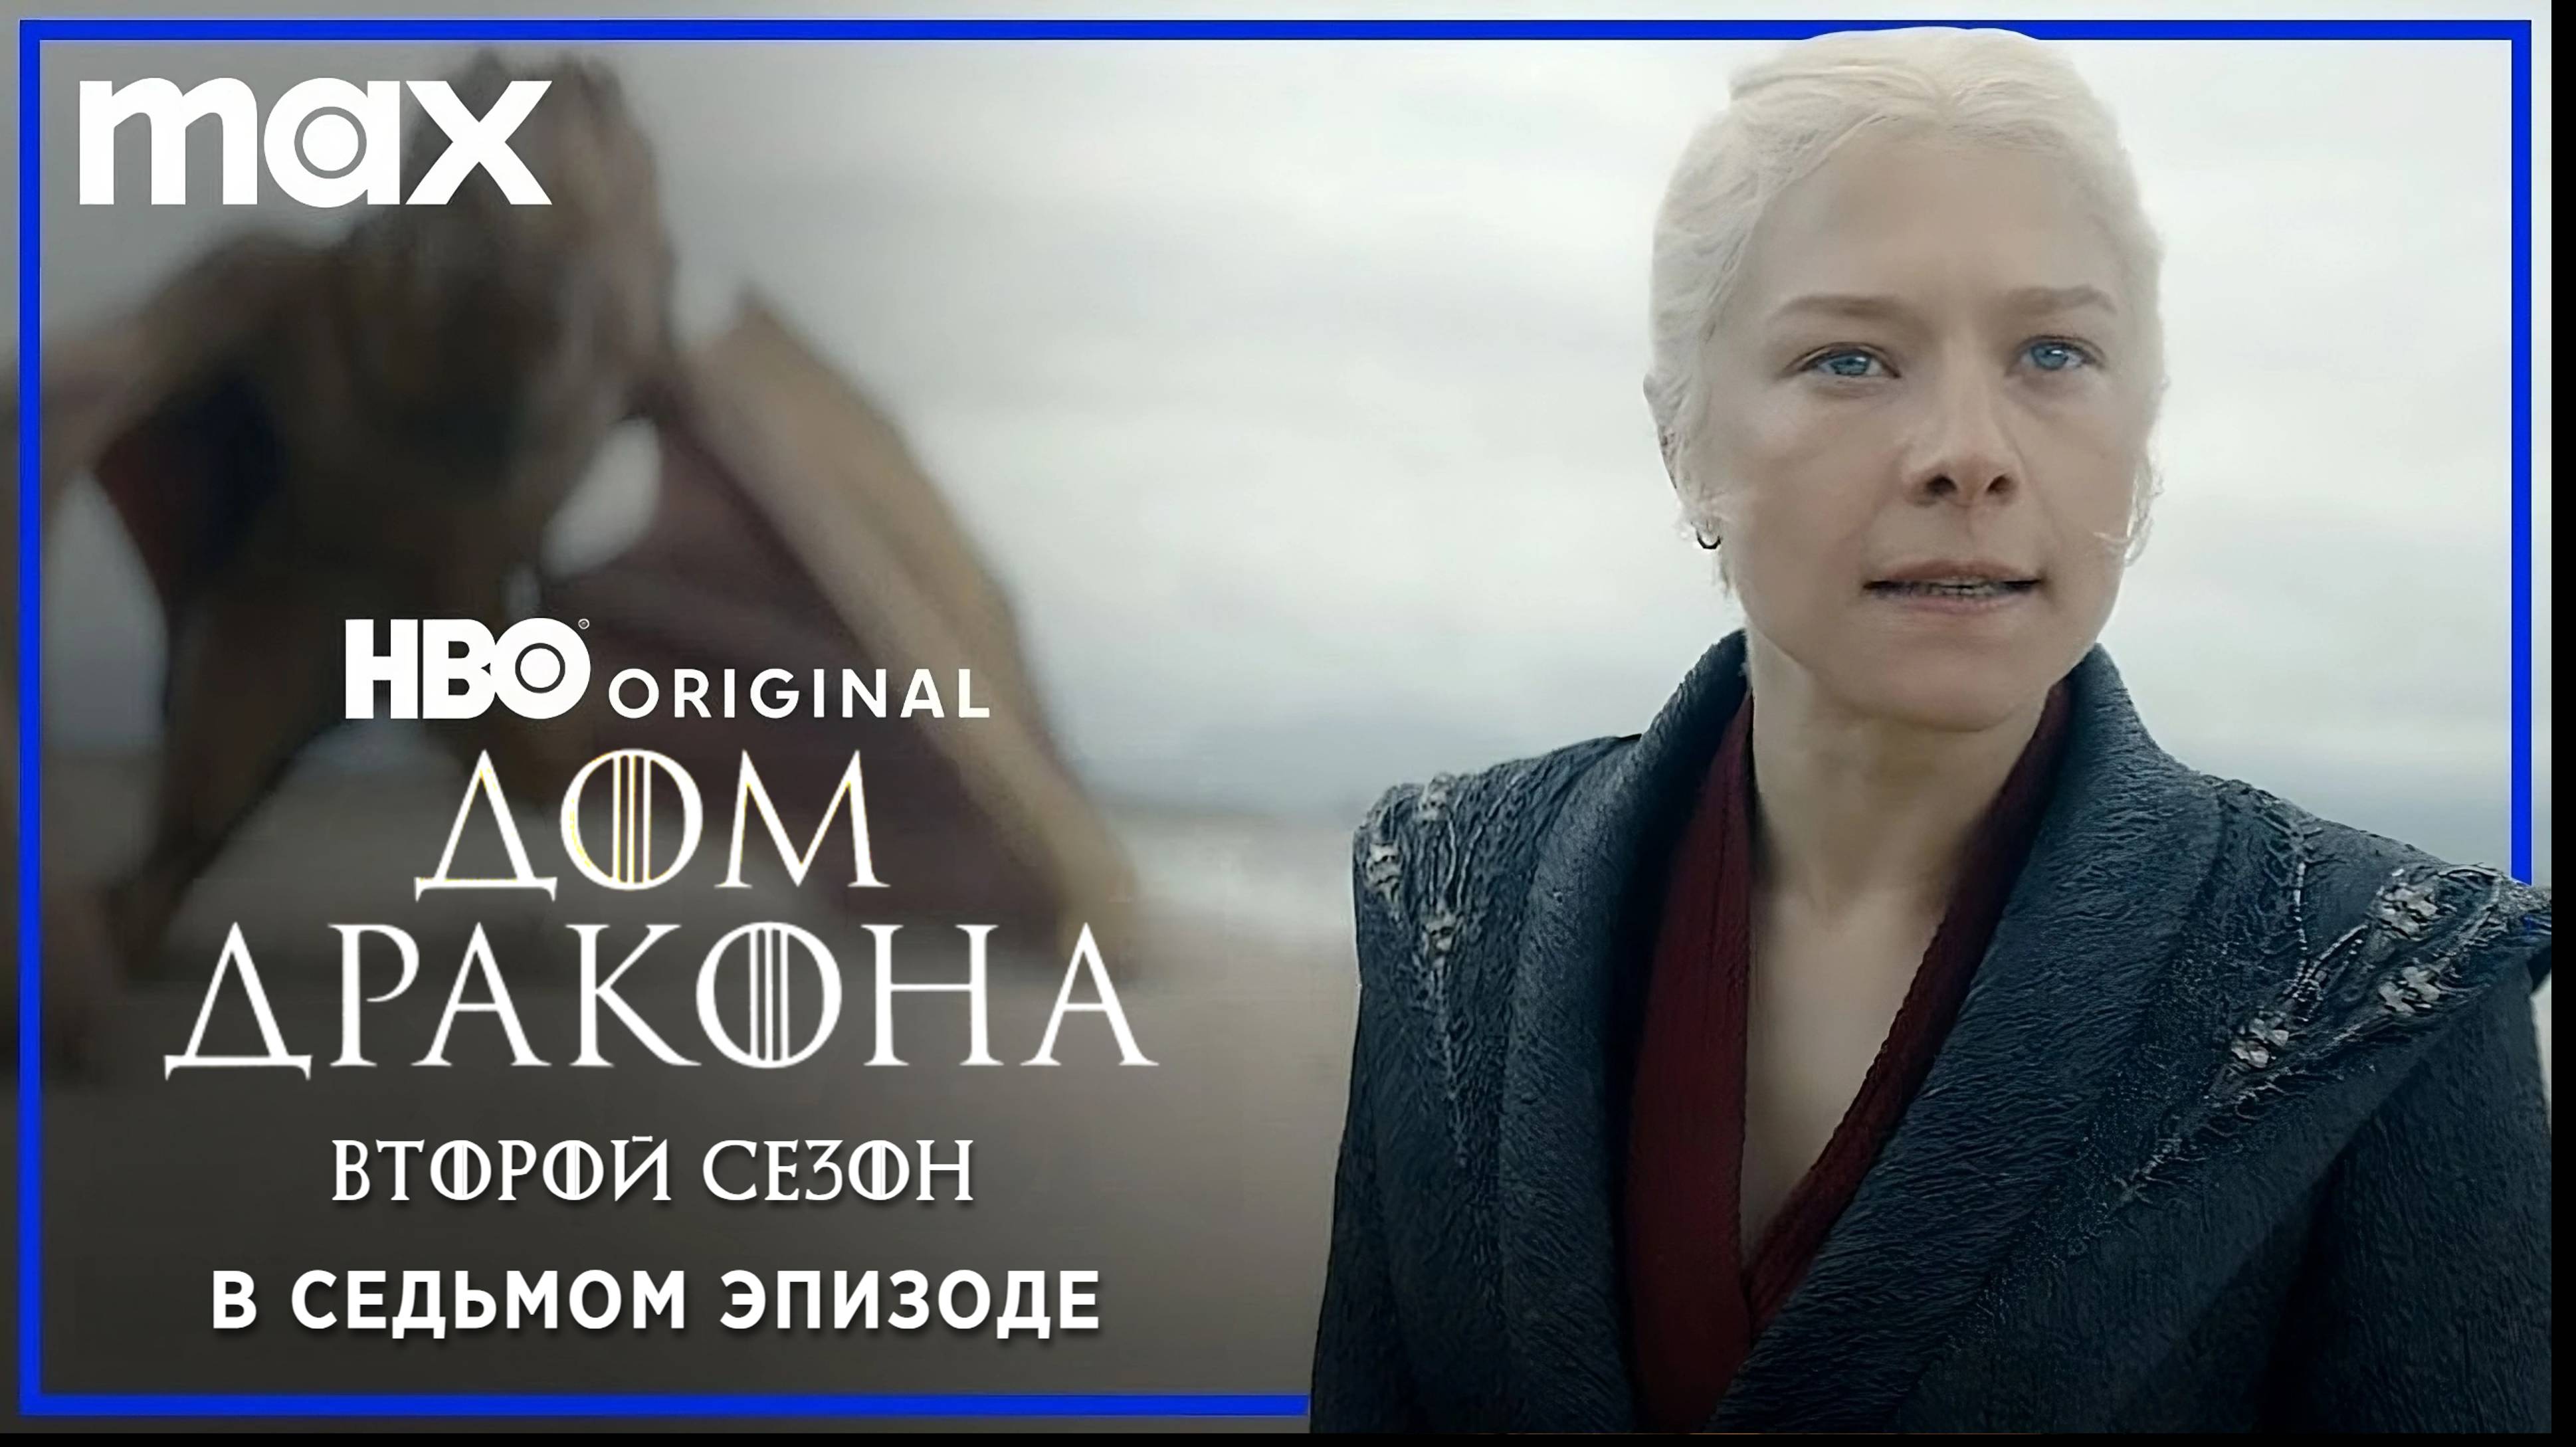 ДОМ ДРАКОНА: Сезон 2 | В седьмом эпизоде | Русские субтитры | HBO